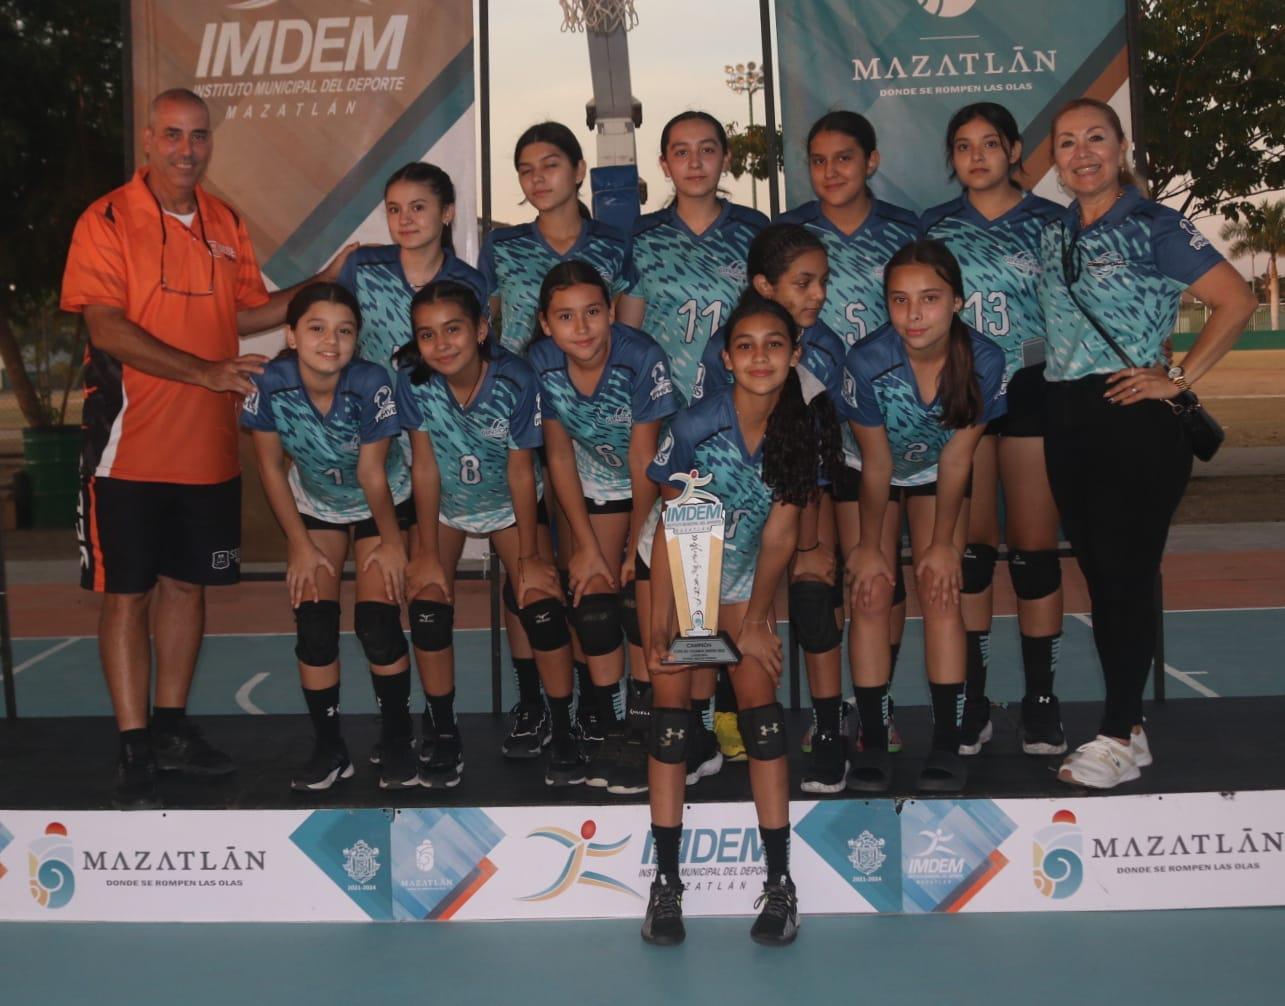 $!Guasave y Panteras Culiacán, campeones de Copa de Voleibol Imdem